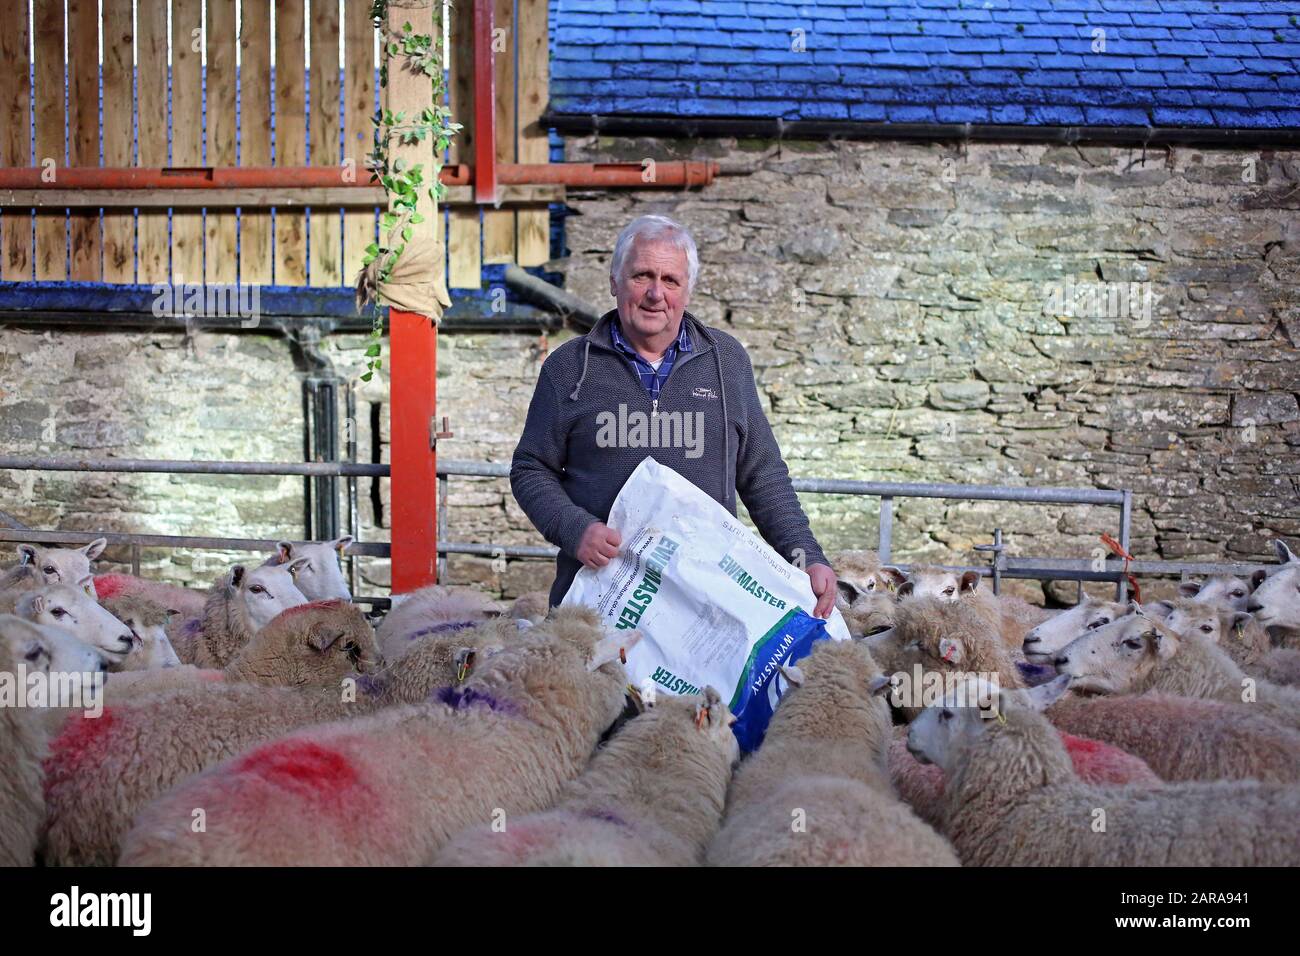 23 gennaio 2020, Regno Unito, Betws-Y-Coed: Glyn Roberts, presidente dell'Unione dei contadini nazionali gallesi, sta tra le sue pecore nella sua fattoria in Galles. I circa 18.000 agricoltori della parte britannica del paese temono gravi perdite dovute alla brexite. Essi dipendono fortemente dagli aiuti dell'Unione europea. Il Galles riceve annualmente dall'Unione europea circa 680 milioni di sterline (circa 800 milioni di euro). (A dpa-KORR.: 'Brexite incontra la casa dei poveri britannici Galles proprio nel cuore' del 26.01.2020) Foto: Susanna Irlanda/dpa Foto Stock